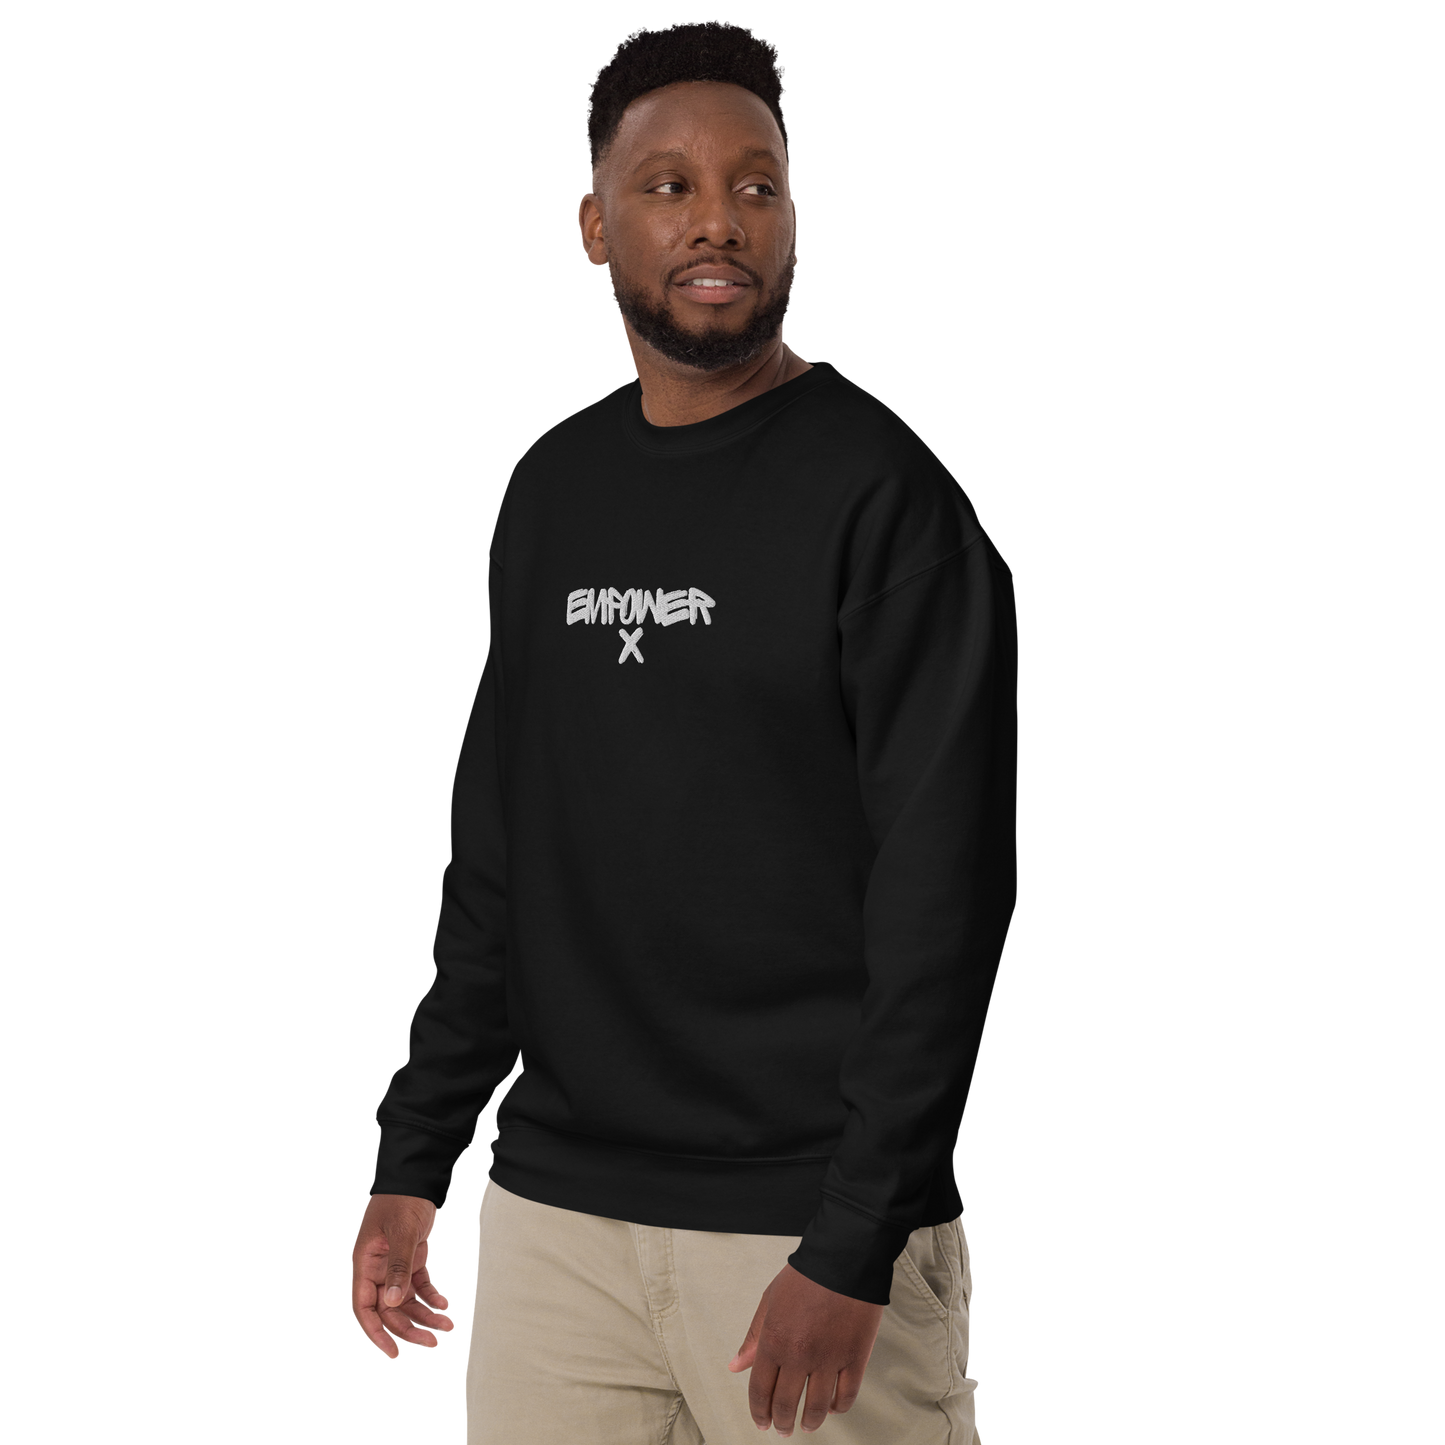 Black Men's Empower X First Edition Series Embroidered Sweatshirt